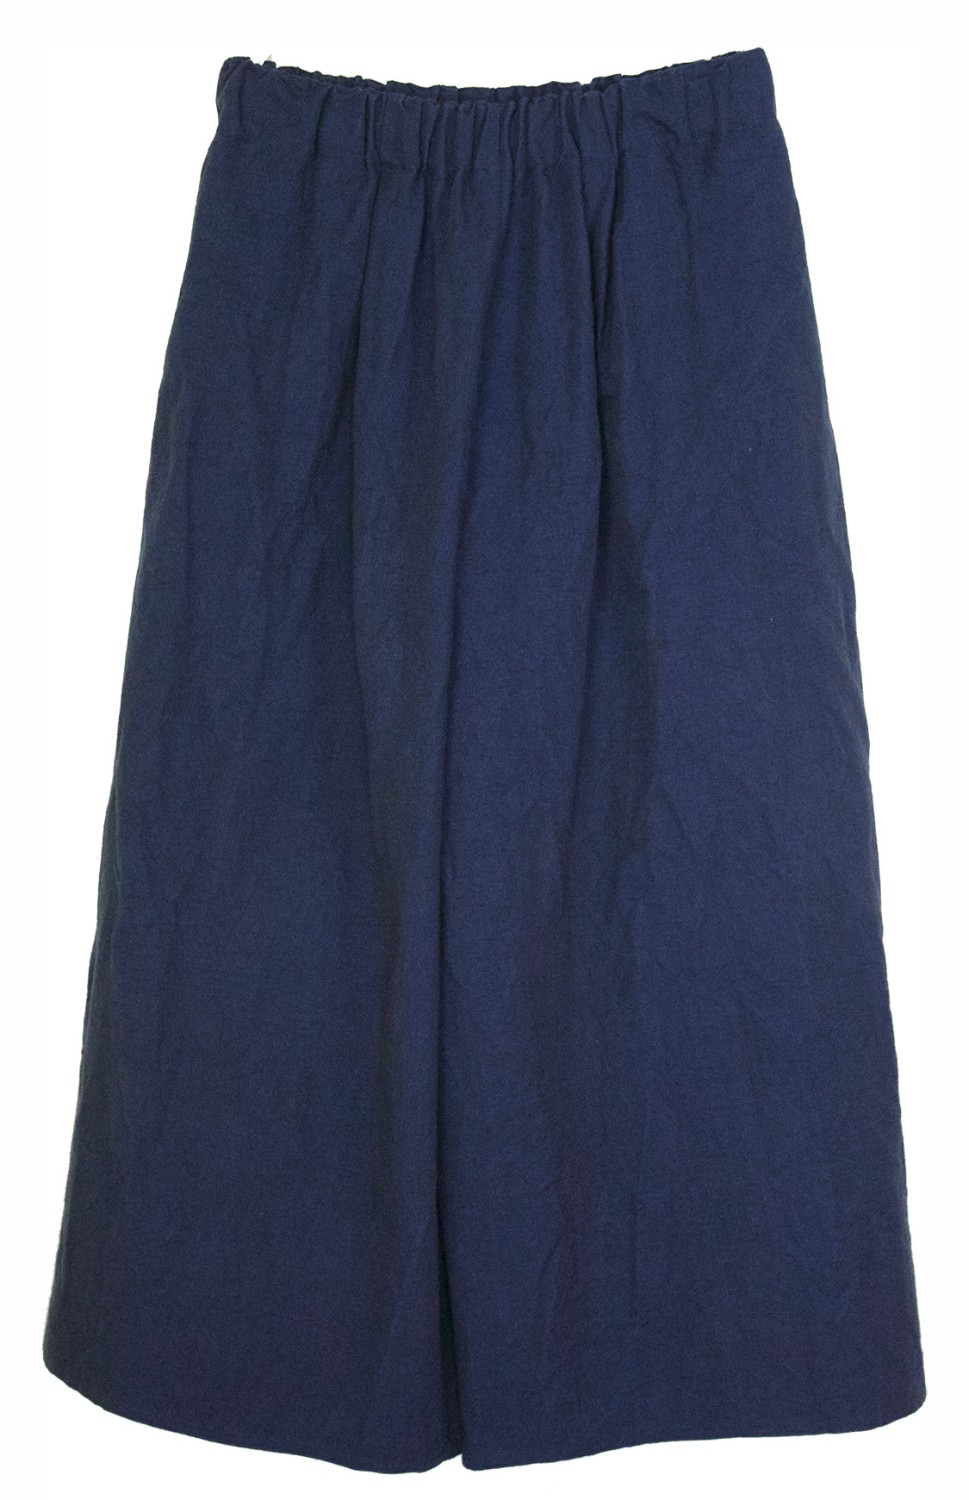 shop Dusan  Pantaloni: Pantalone Dusan, blu, in lino e cotone, elastico in vita, tasche laterali, lunghezza alla caviglia.

Composizione: 50% lino, 50% cotone. number 1185